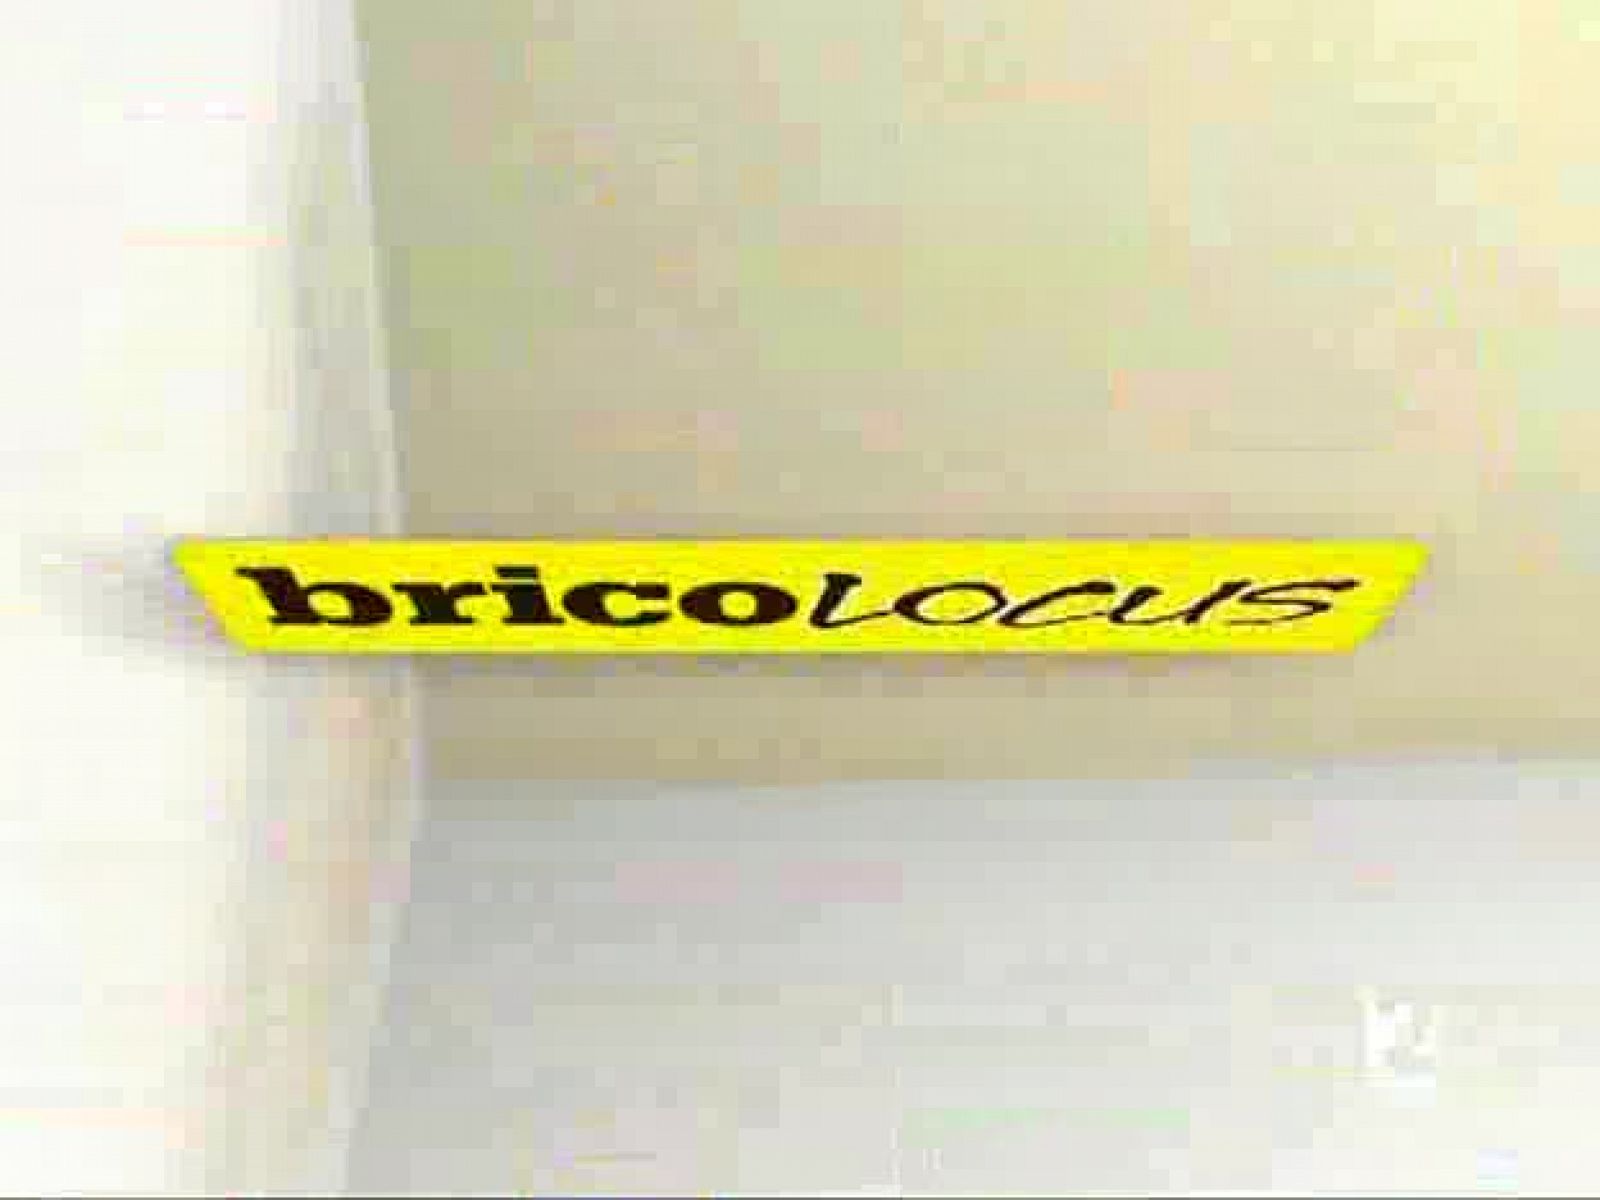 Bricolocus - 08/08/08